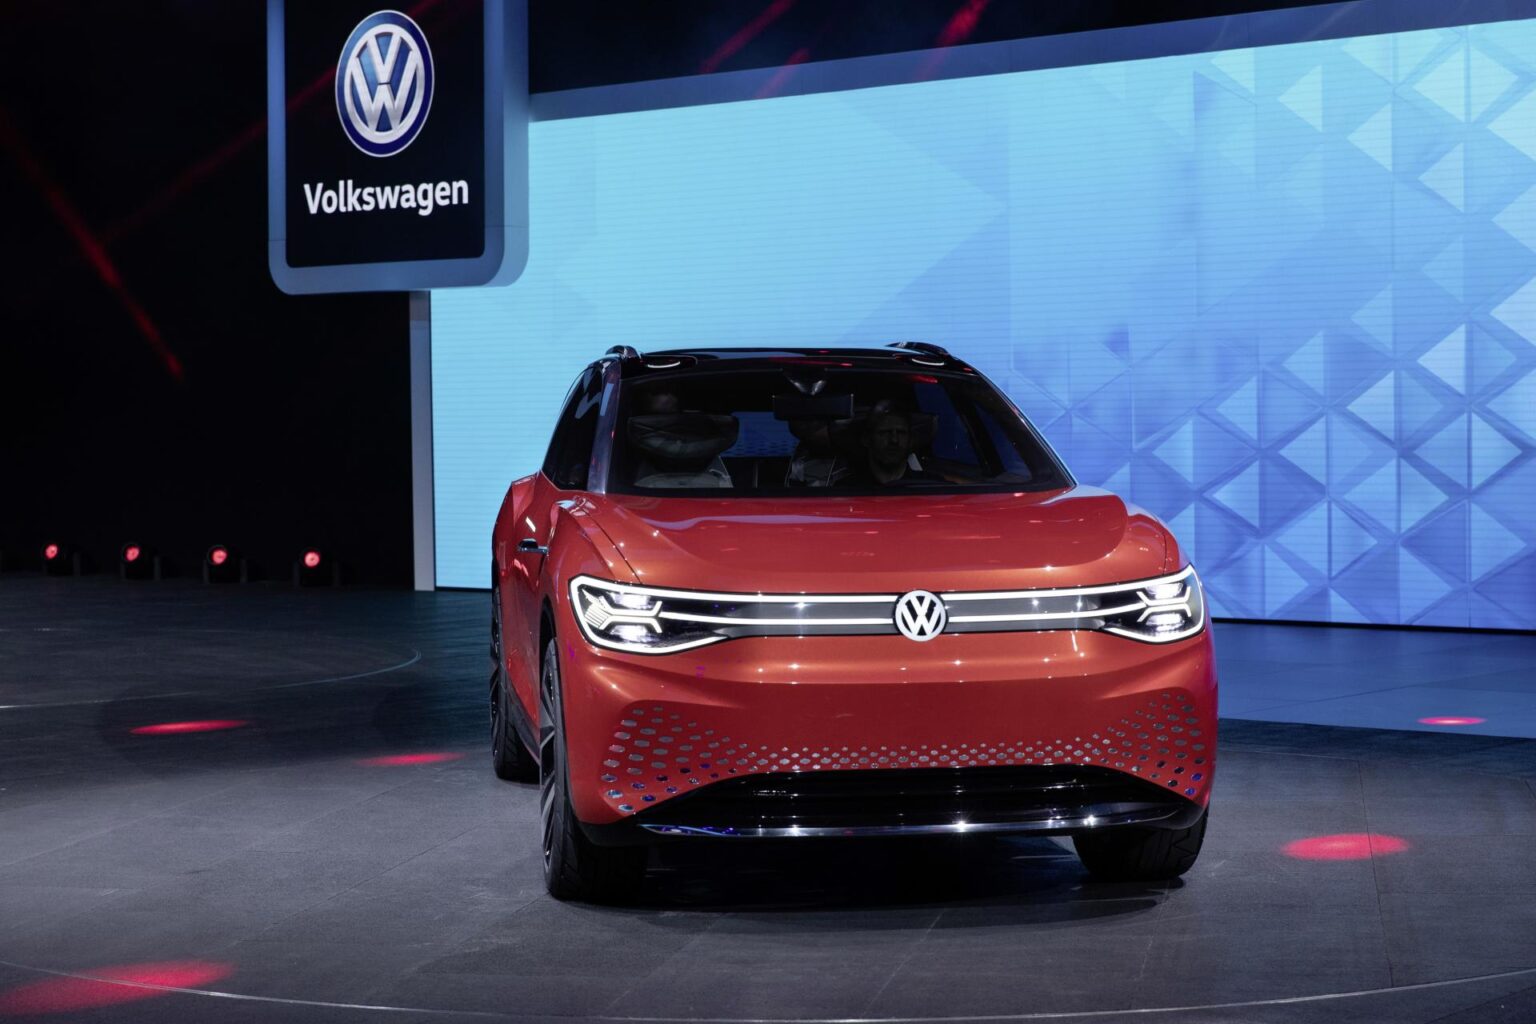 VW beginnt mit der Vorproduktion des 7-Sitzer E-SUV ID. Roomzz in China